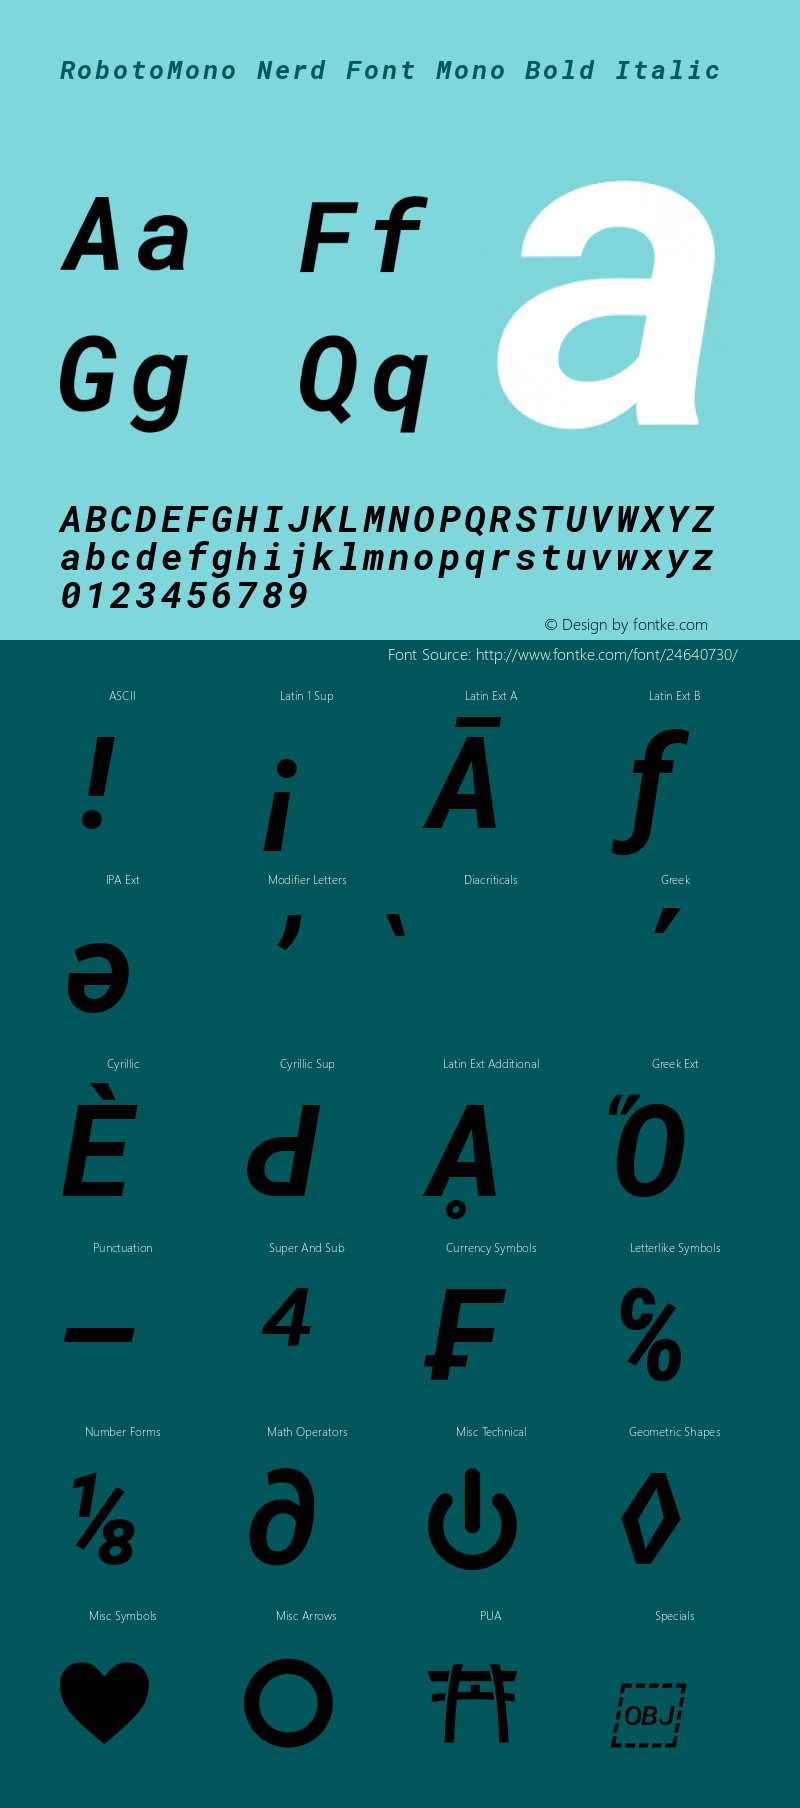 Roboto Mono Bold Italic Nerd Font Complete Mono Version 2.000986; 2015; ttfautohint (v1.3) Font Sample